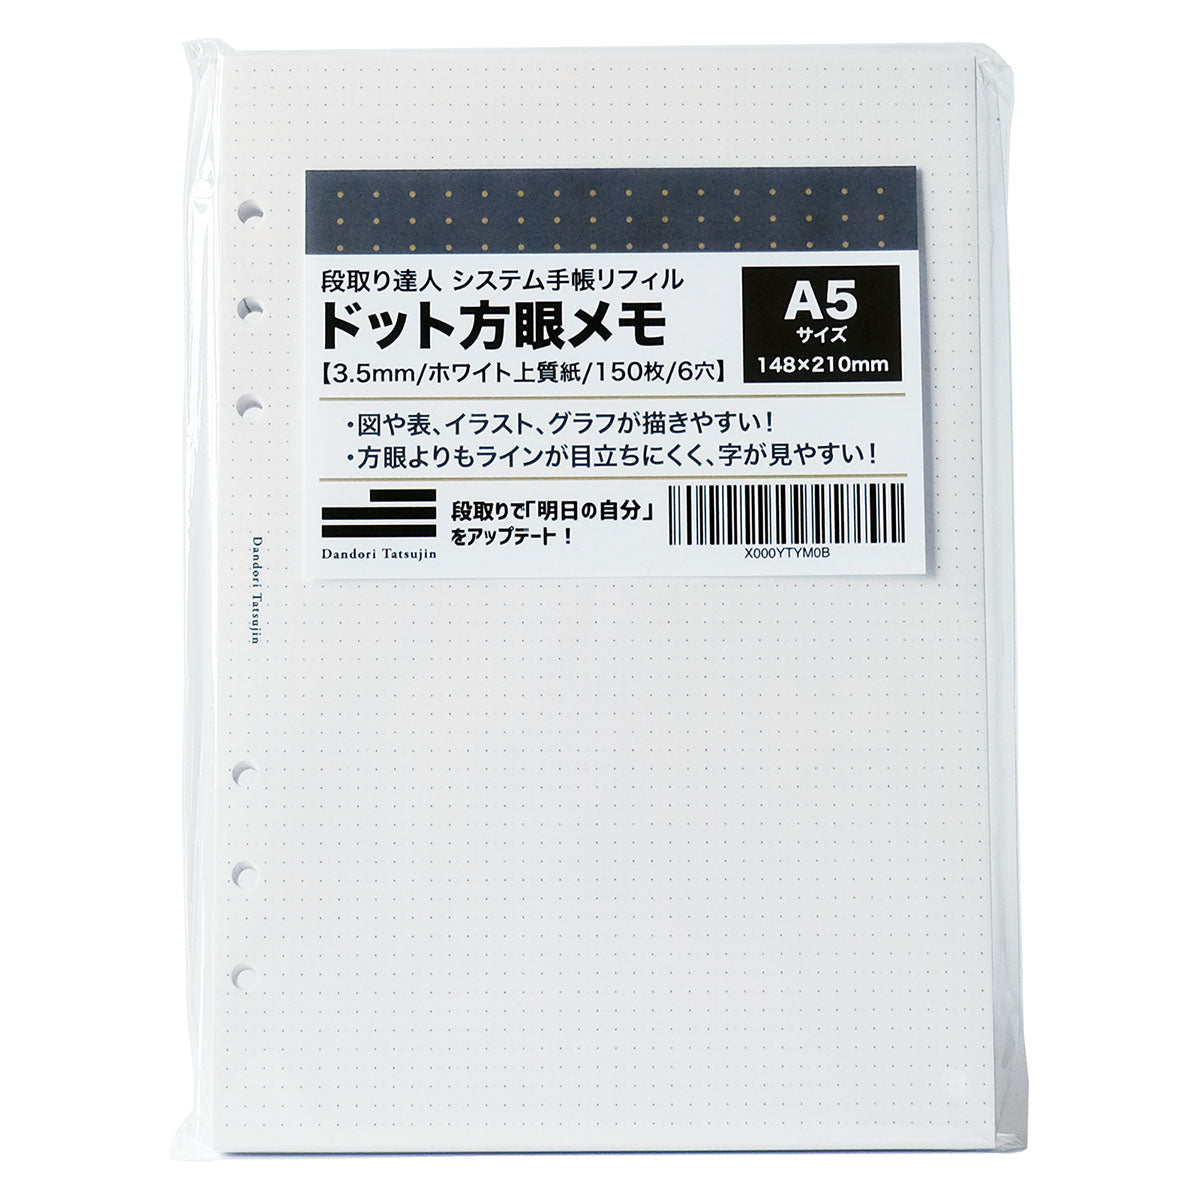 システム手帳 リフィル ドット方眼メモ 3.5mm 150枚 6穴 ホワイト 上質紙 （ A5サイズ ）